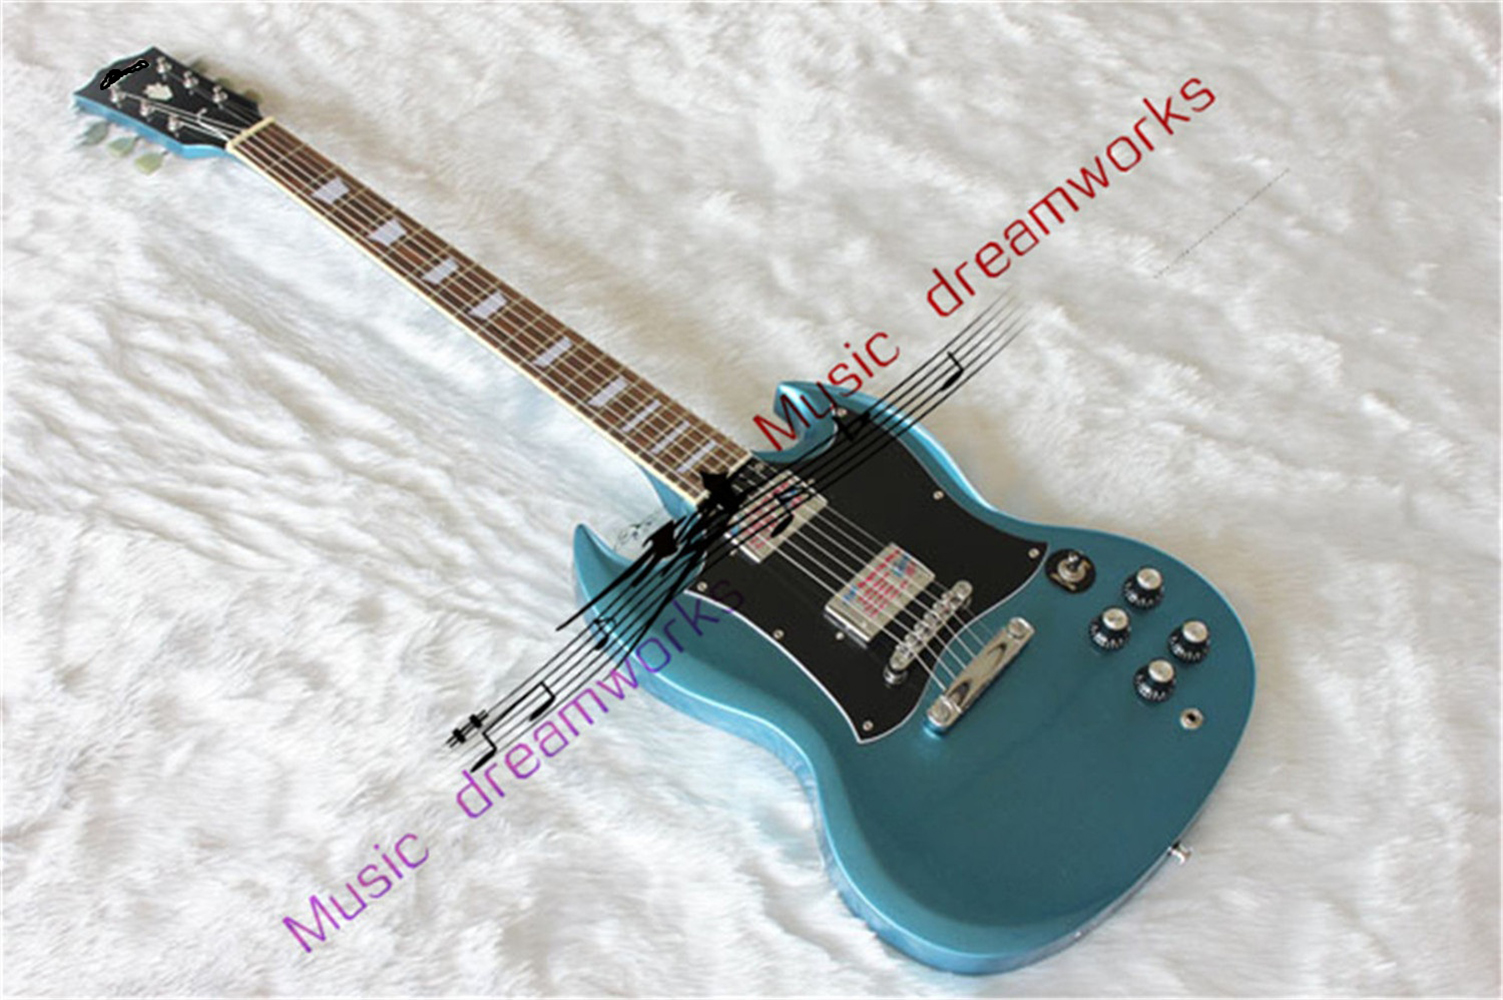 Niebieski srebrny proszek G-400 Wysokiej jakości gitara elektryczna SG, sprzęt sprzętowy niklu, duża tablica ochrony pickupu, w magazynie, szybka wysyłka